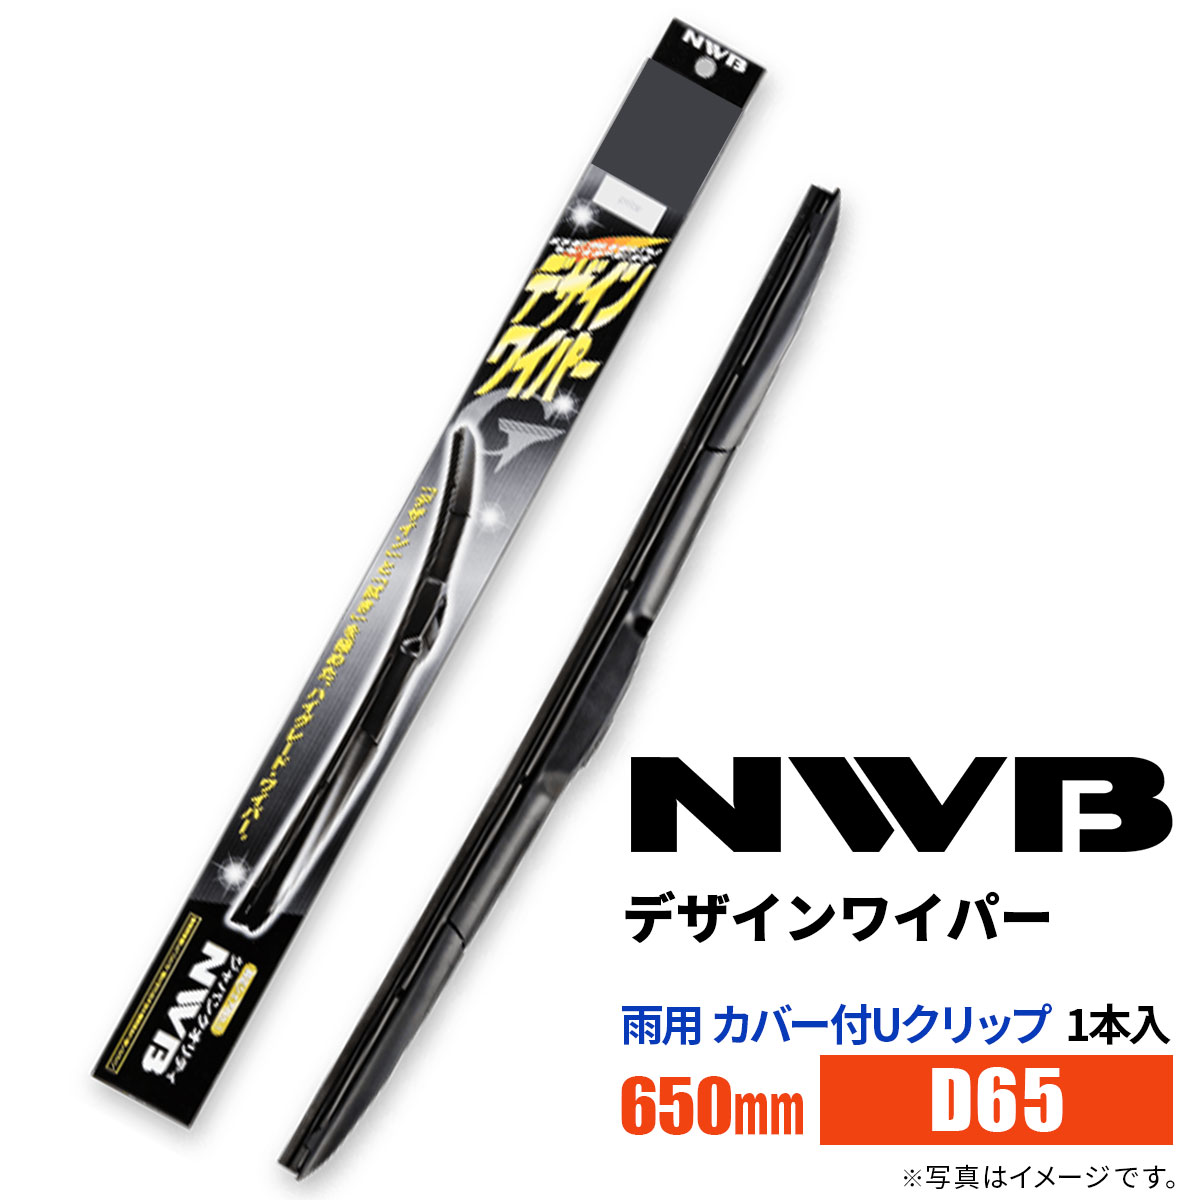 NWB デザインワイパー D65 650mm 1本入 雨用ワイパー カバー付Uクリップ